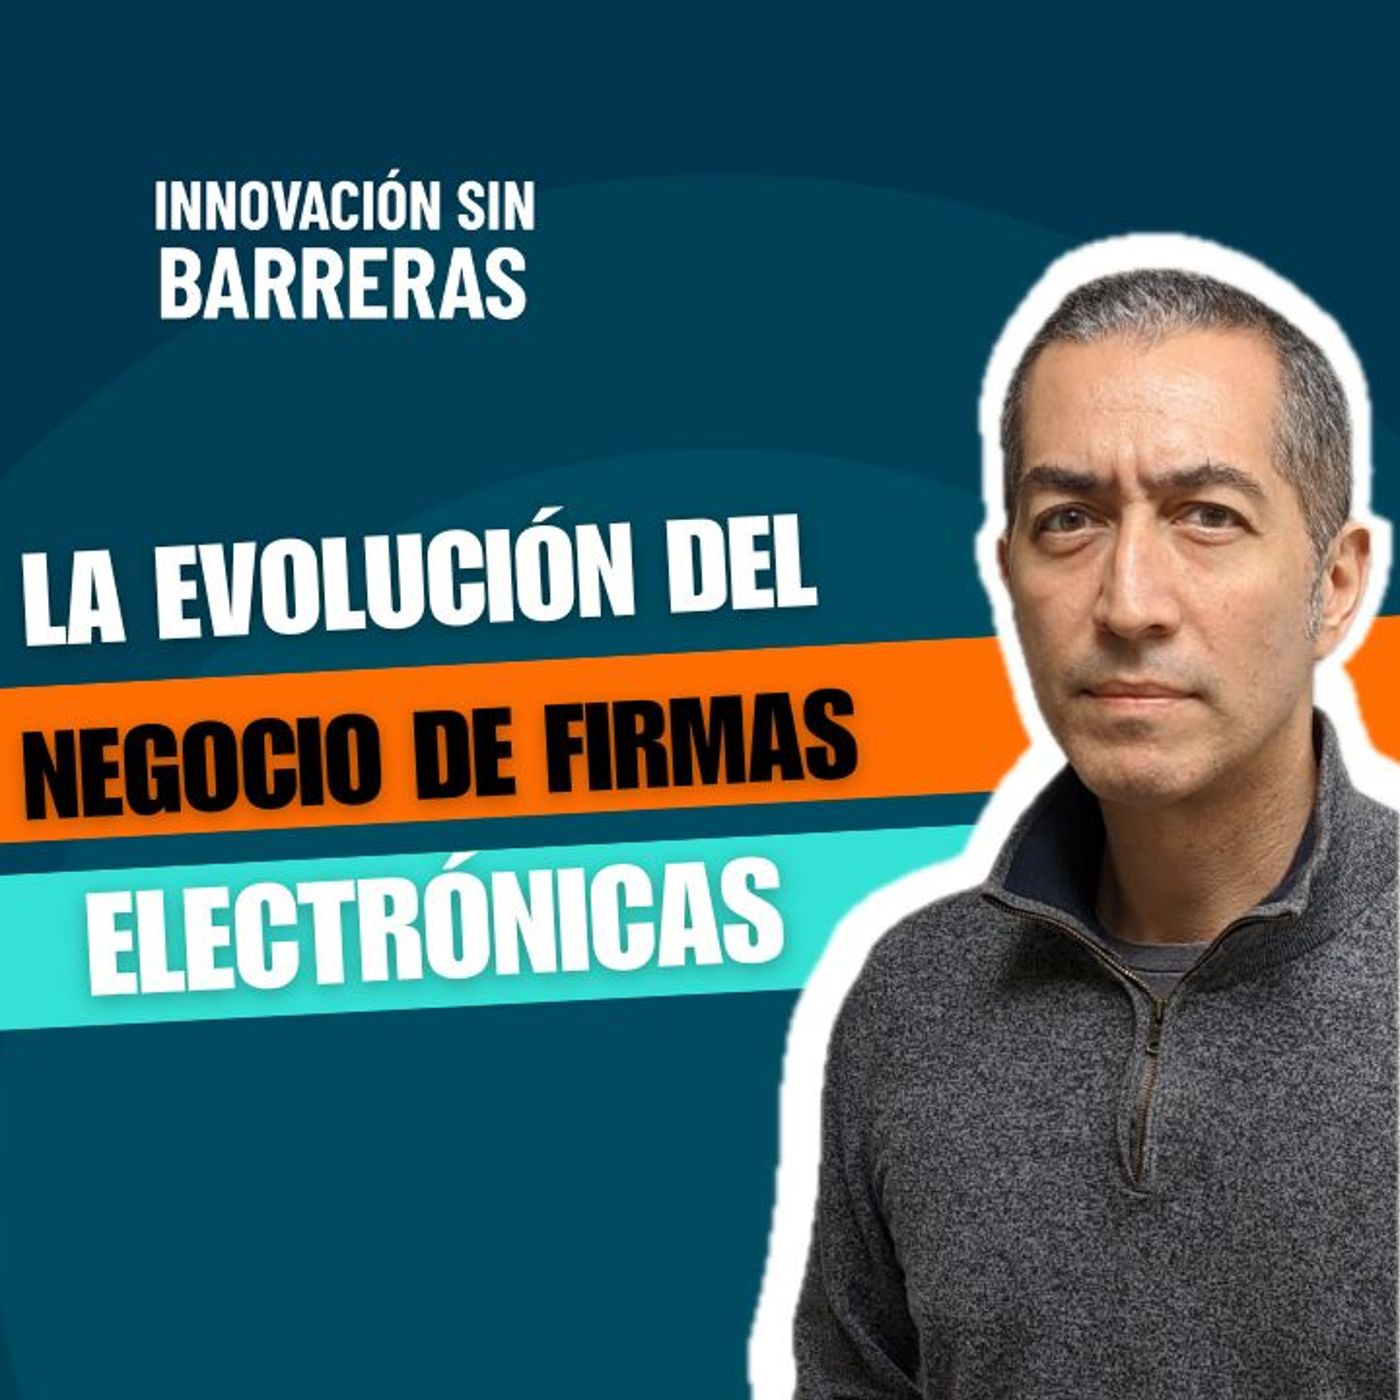 175. La evolución del negocio de firmas electrónicas - Manuel Olguín